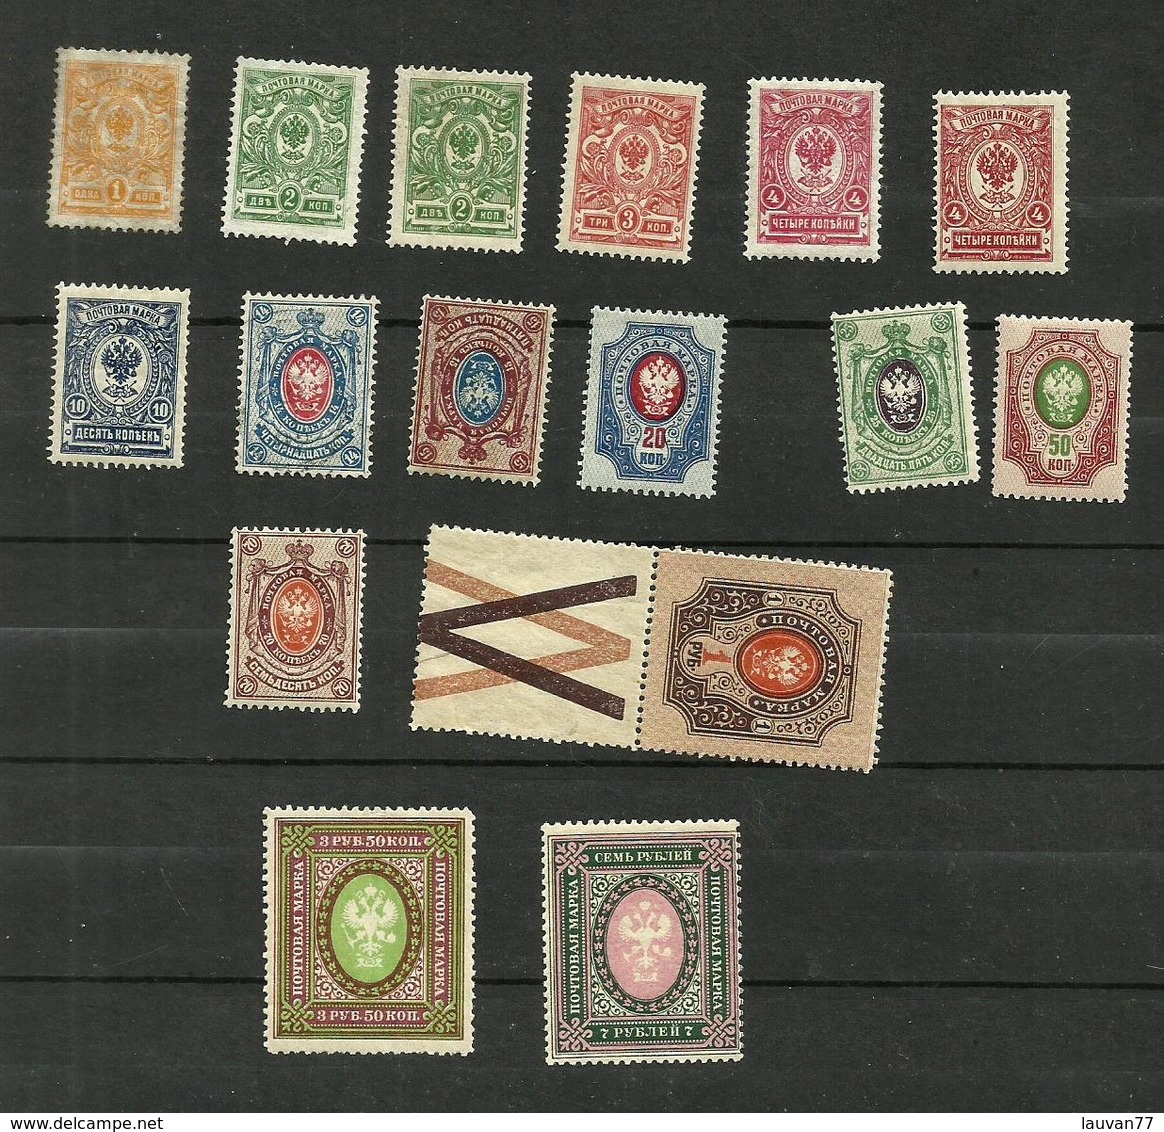 Russie N°61 à 64, 67 à 71, 73 à 75, 126, 127a Cote 3.30 Euros - Used Stamps